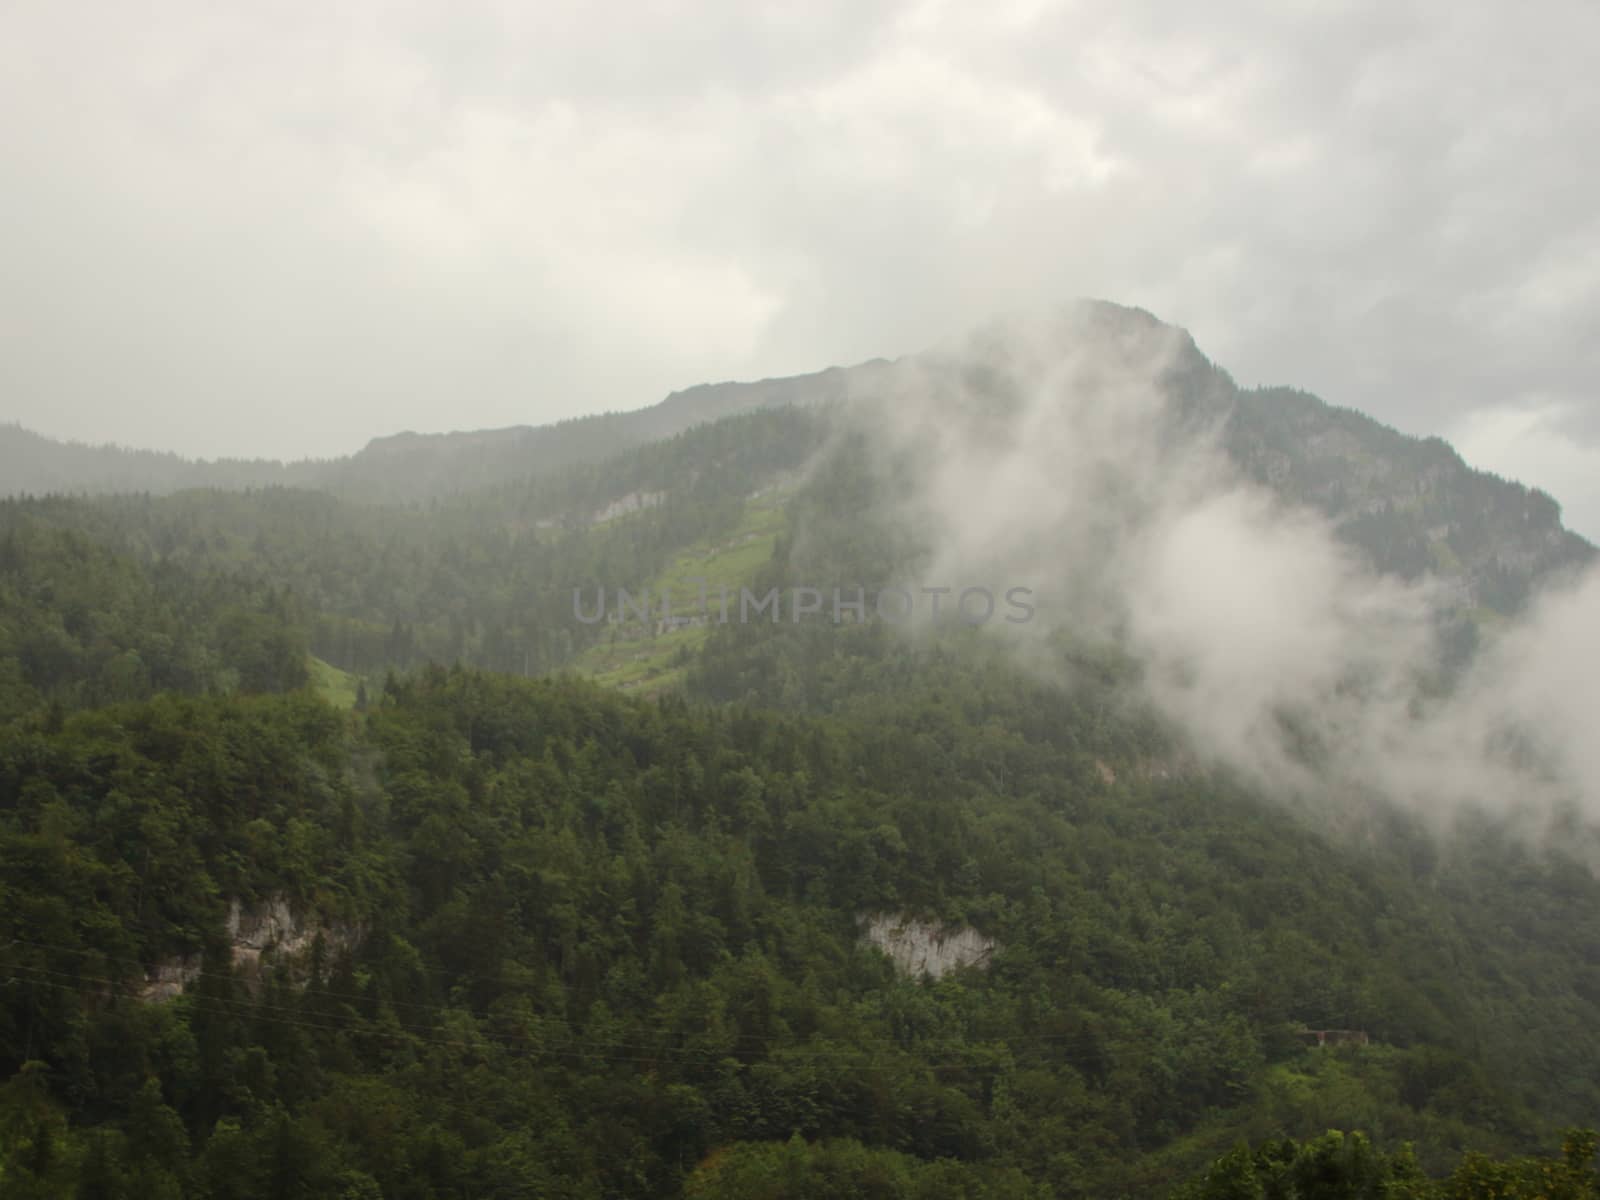 Cloudy Austrian Alp Valley after Heavy Rainfall at Golling Pass Lueg